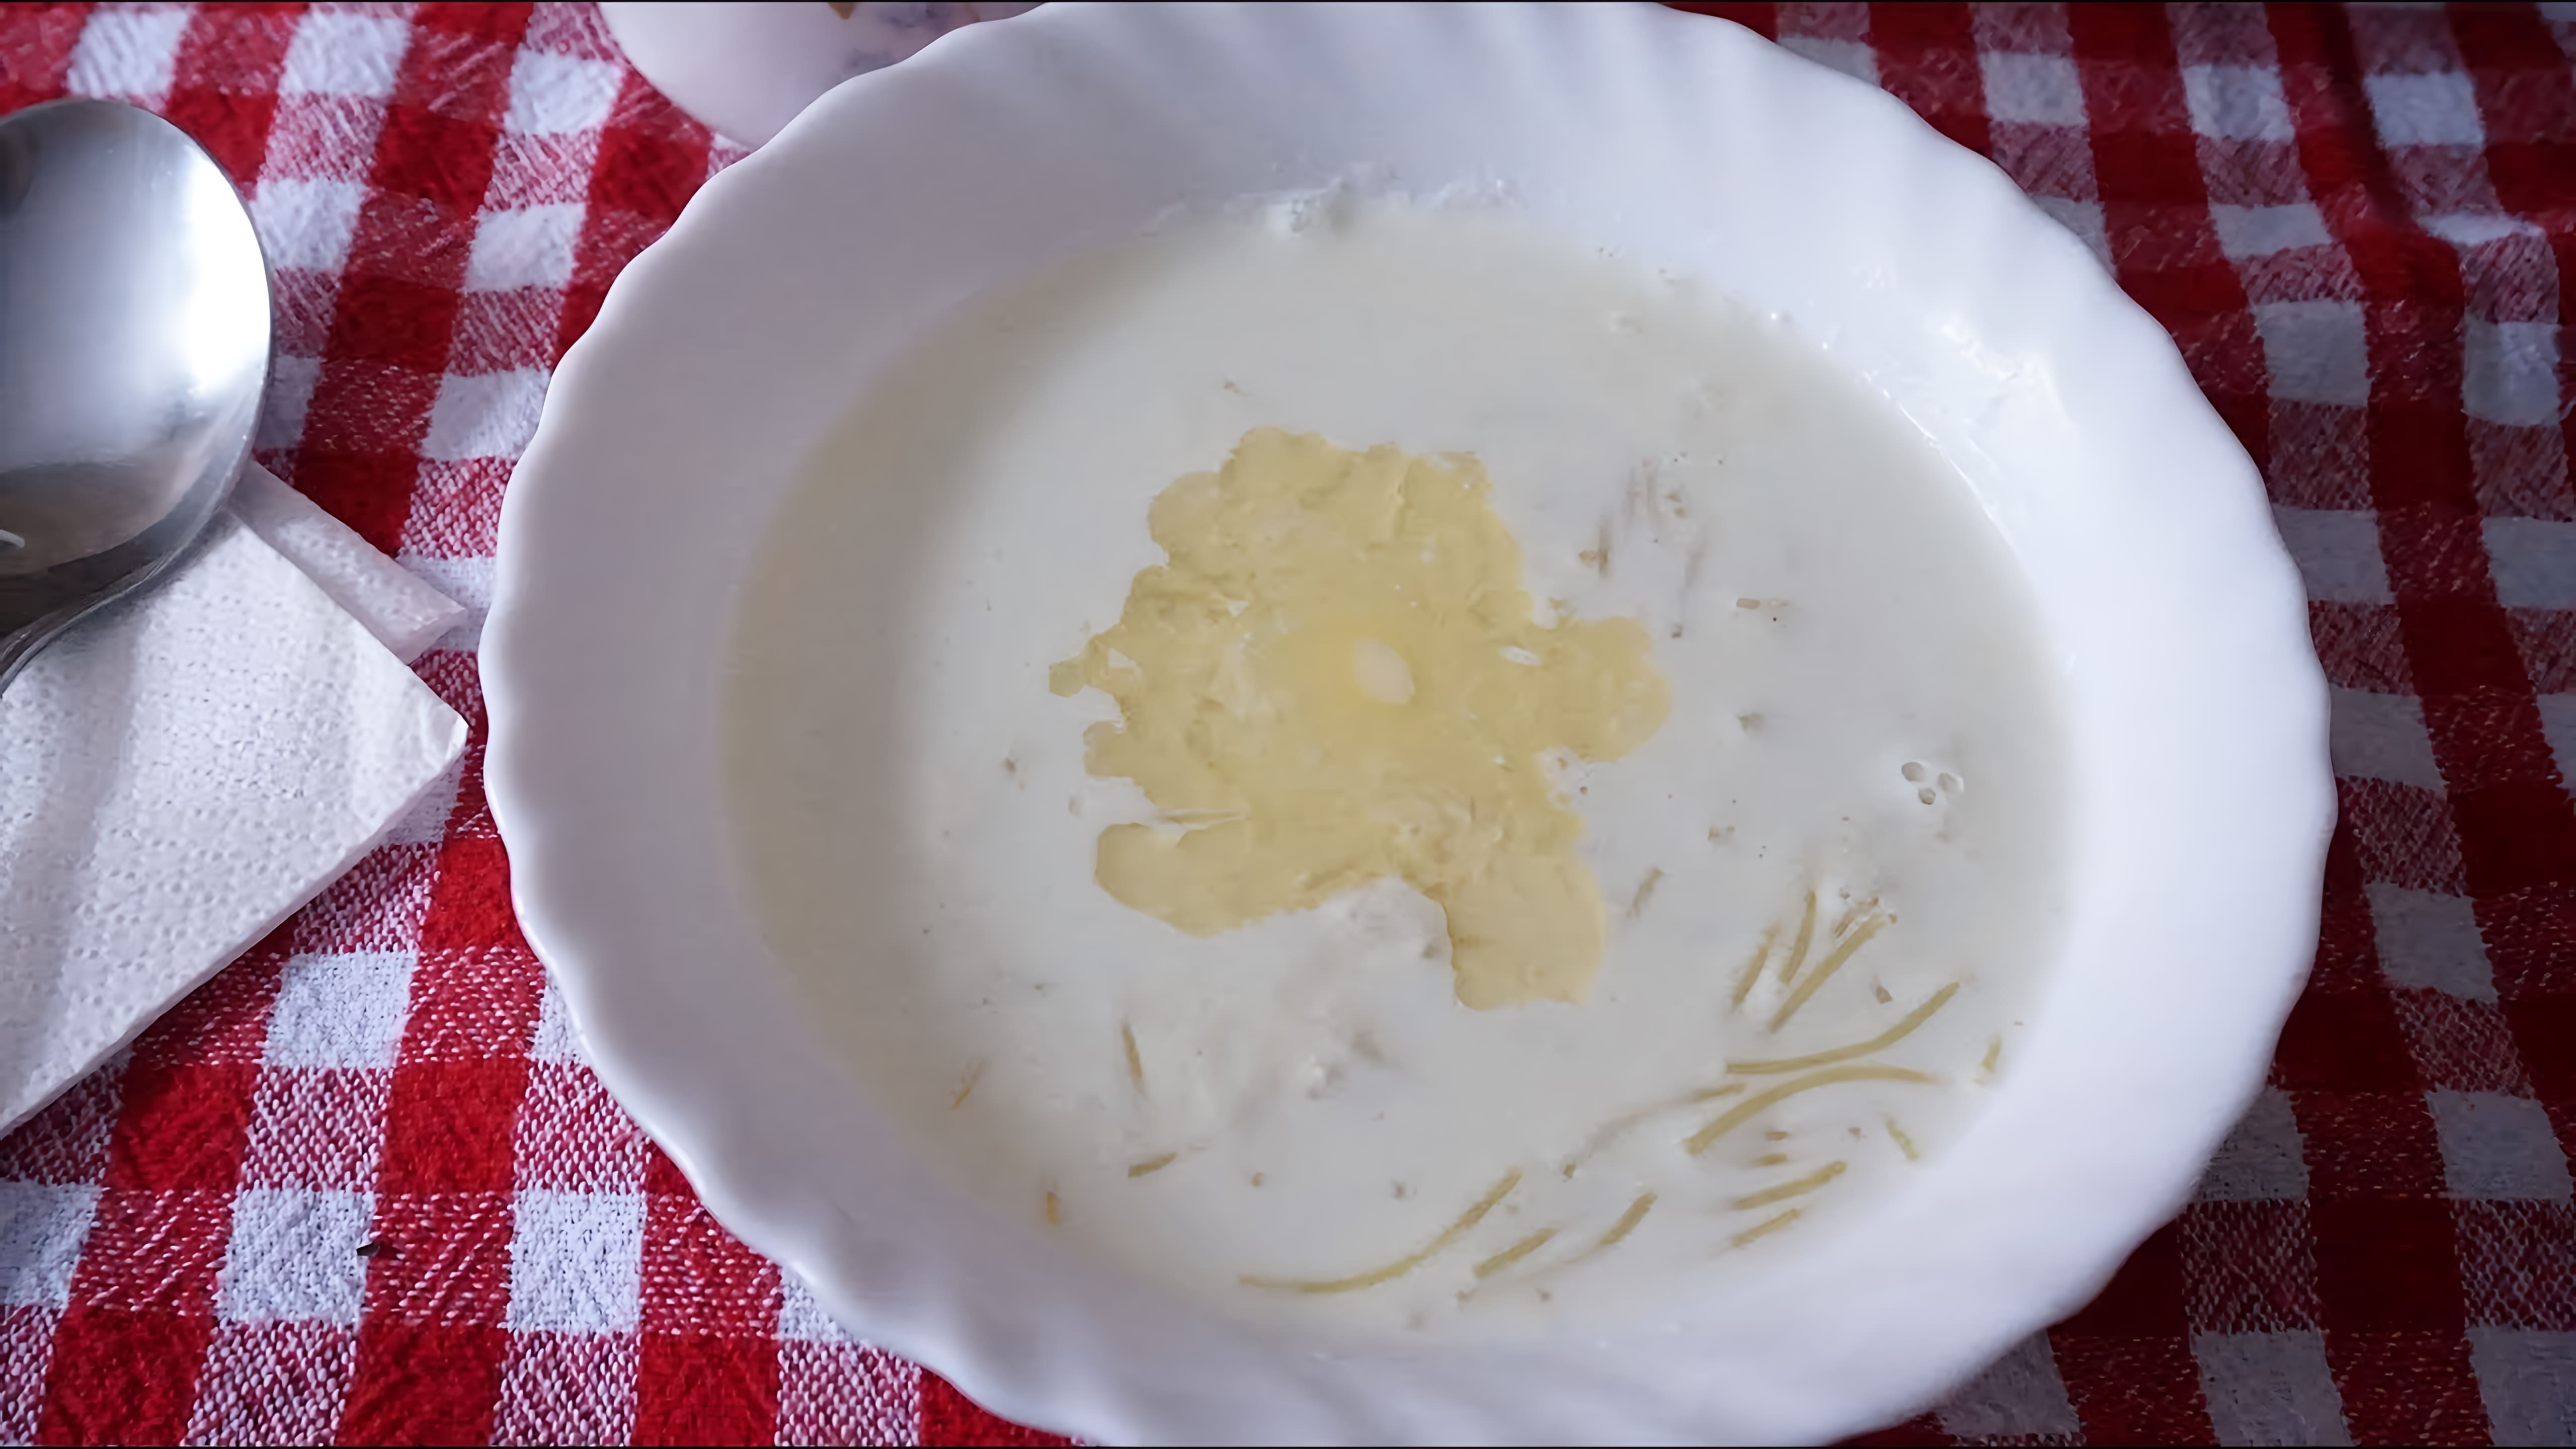 В этом видео демонстрируется процесс приготовления молочного супа с вермишелью